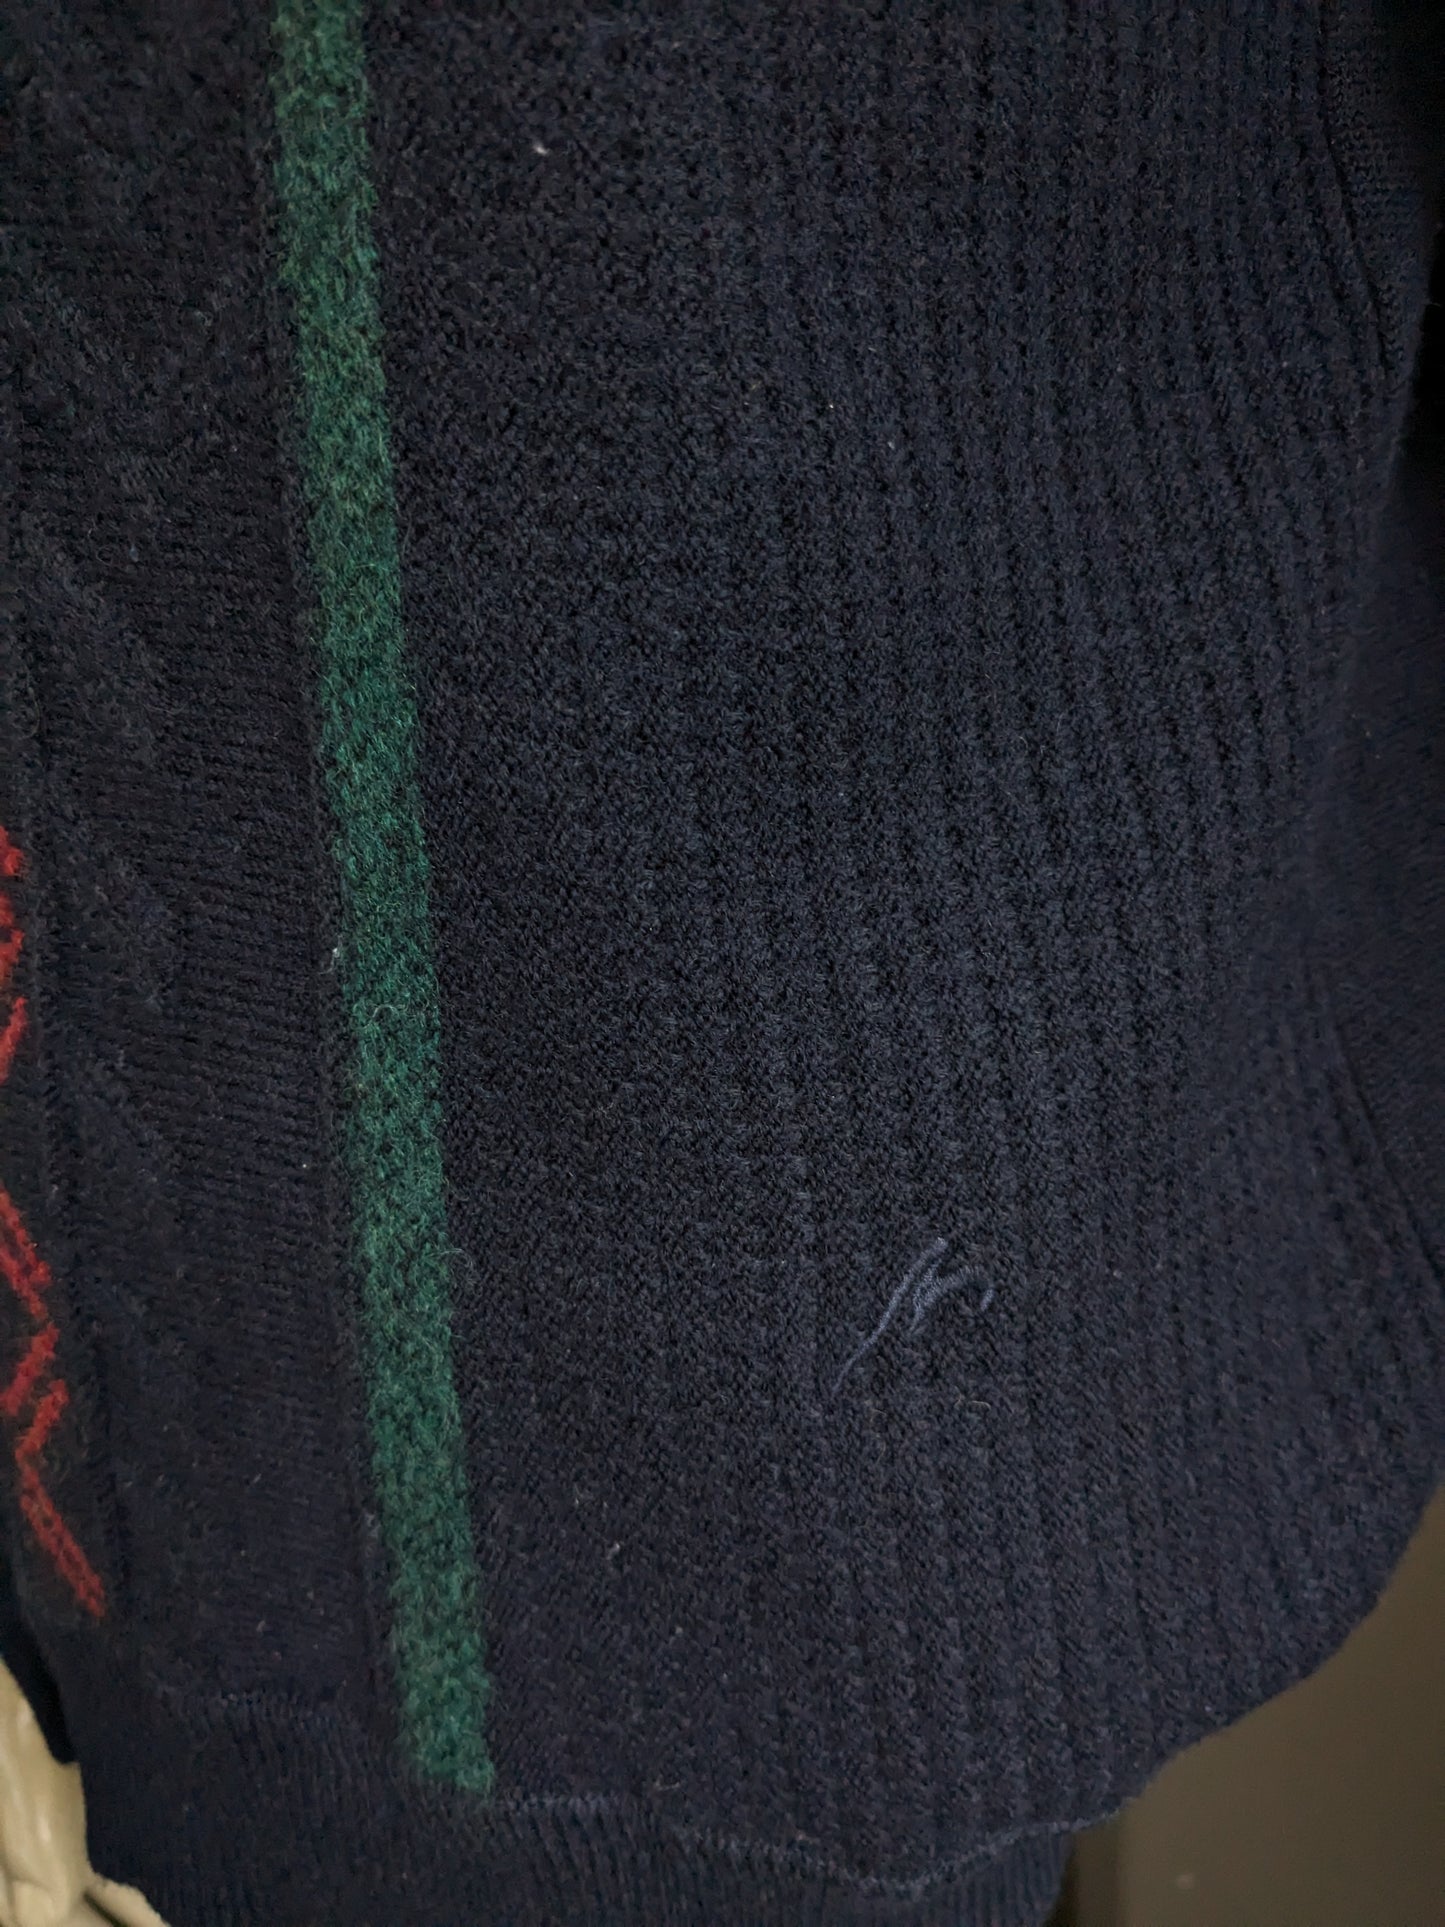 Maglione di lana maselli vintage con scollo a V. Blu scuro con motivo blu verde rosso giallo. Taglia L.